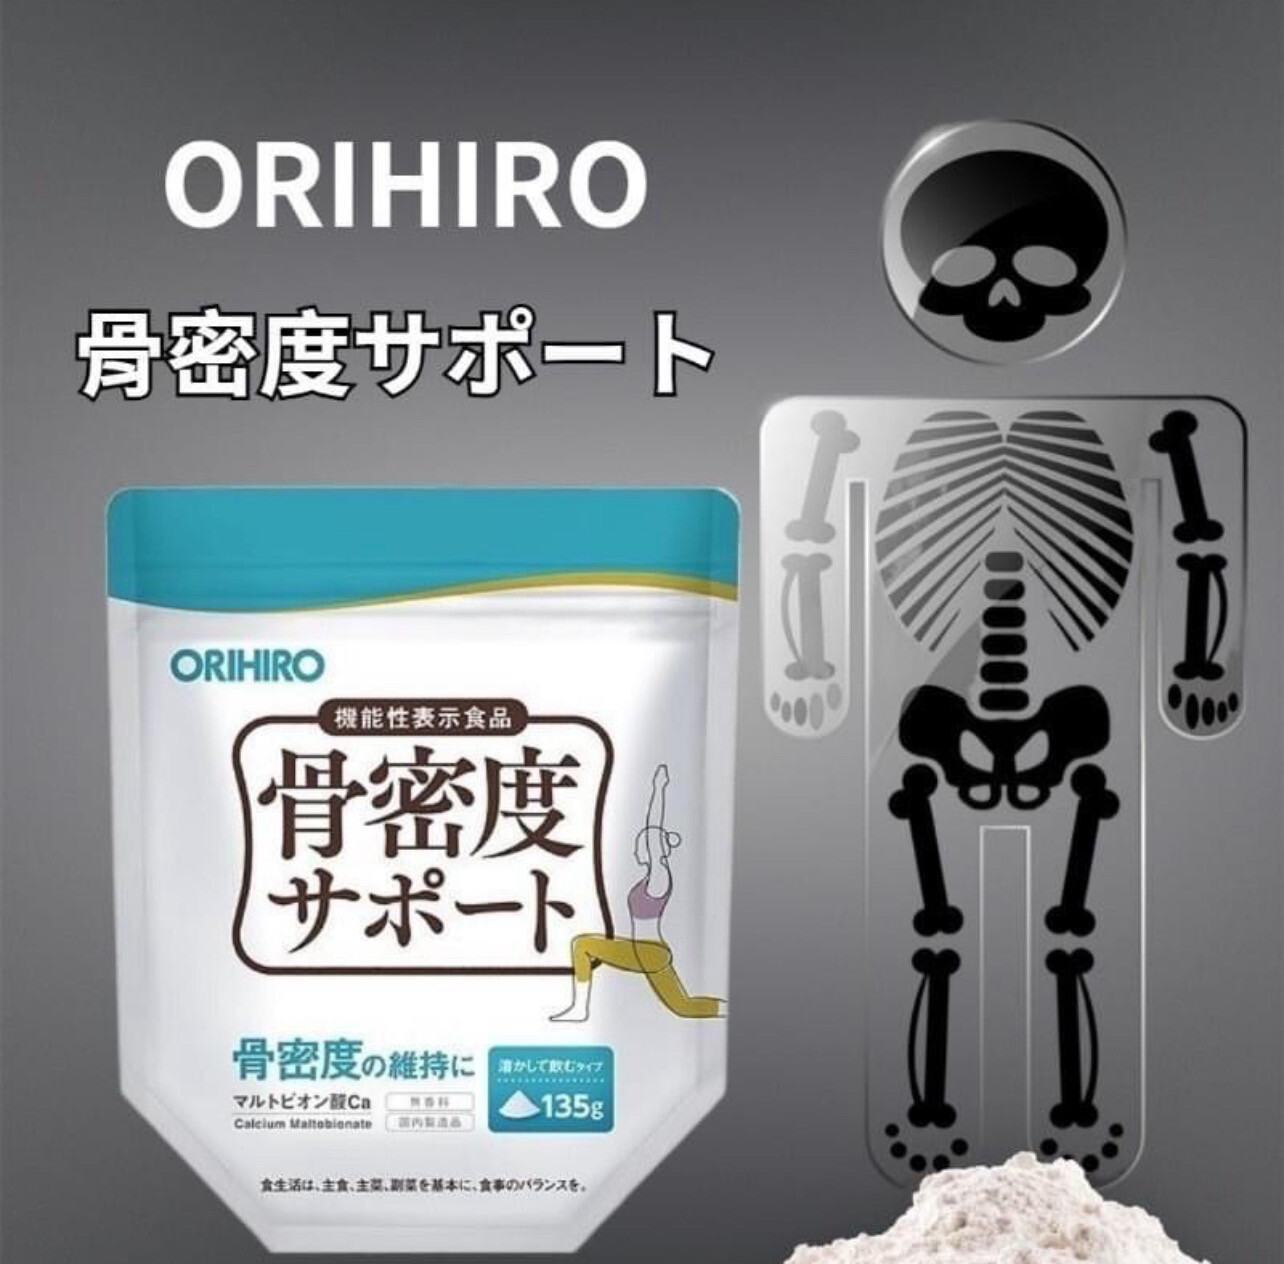 ORIHIRO Bone Density Support Для плотности костей с мальтобионатом кальция на 120 дней